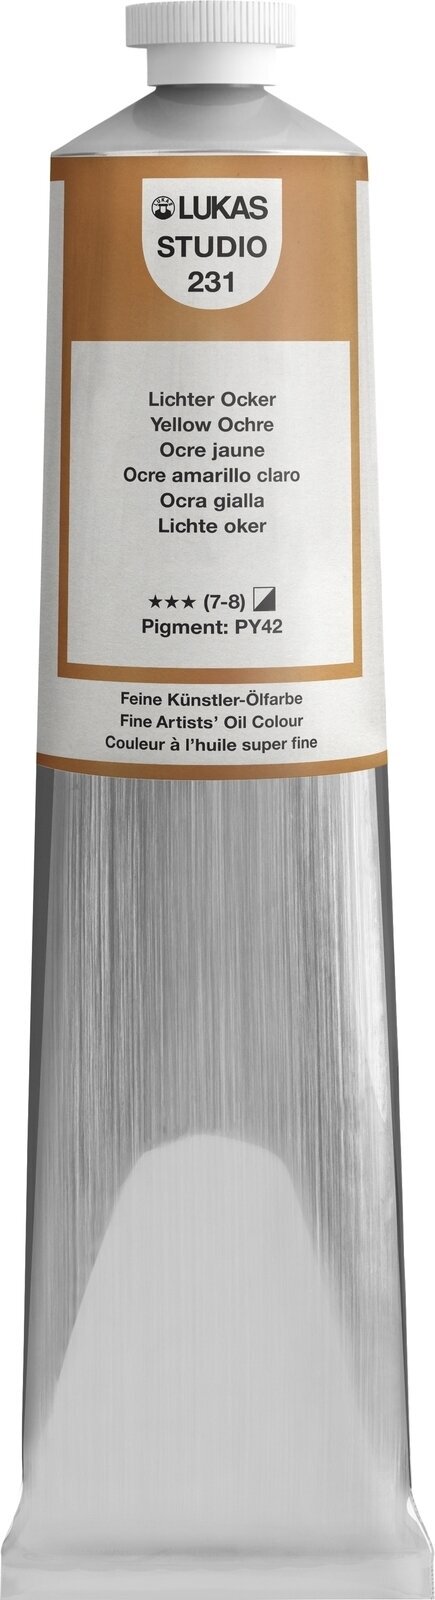 Oil colour Lukas Studio Oil Paint Aluminium Tube Oil Paint Yellow Ochre 200 ml 1 pc